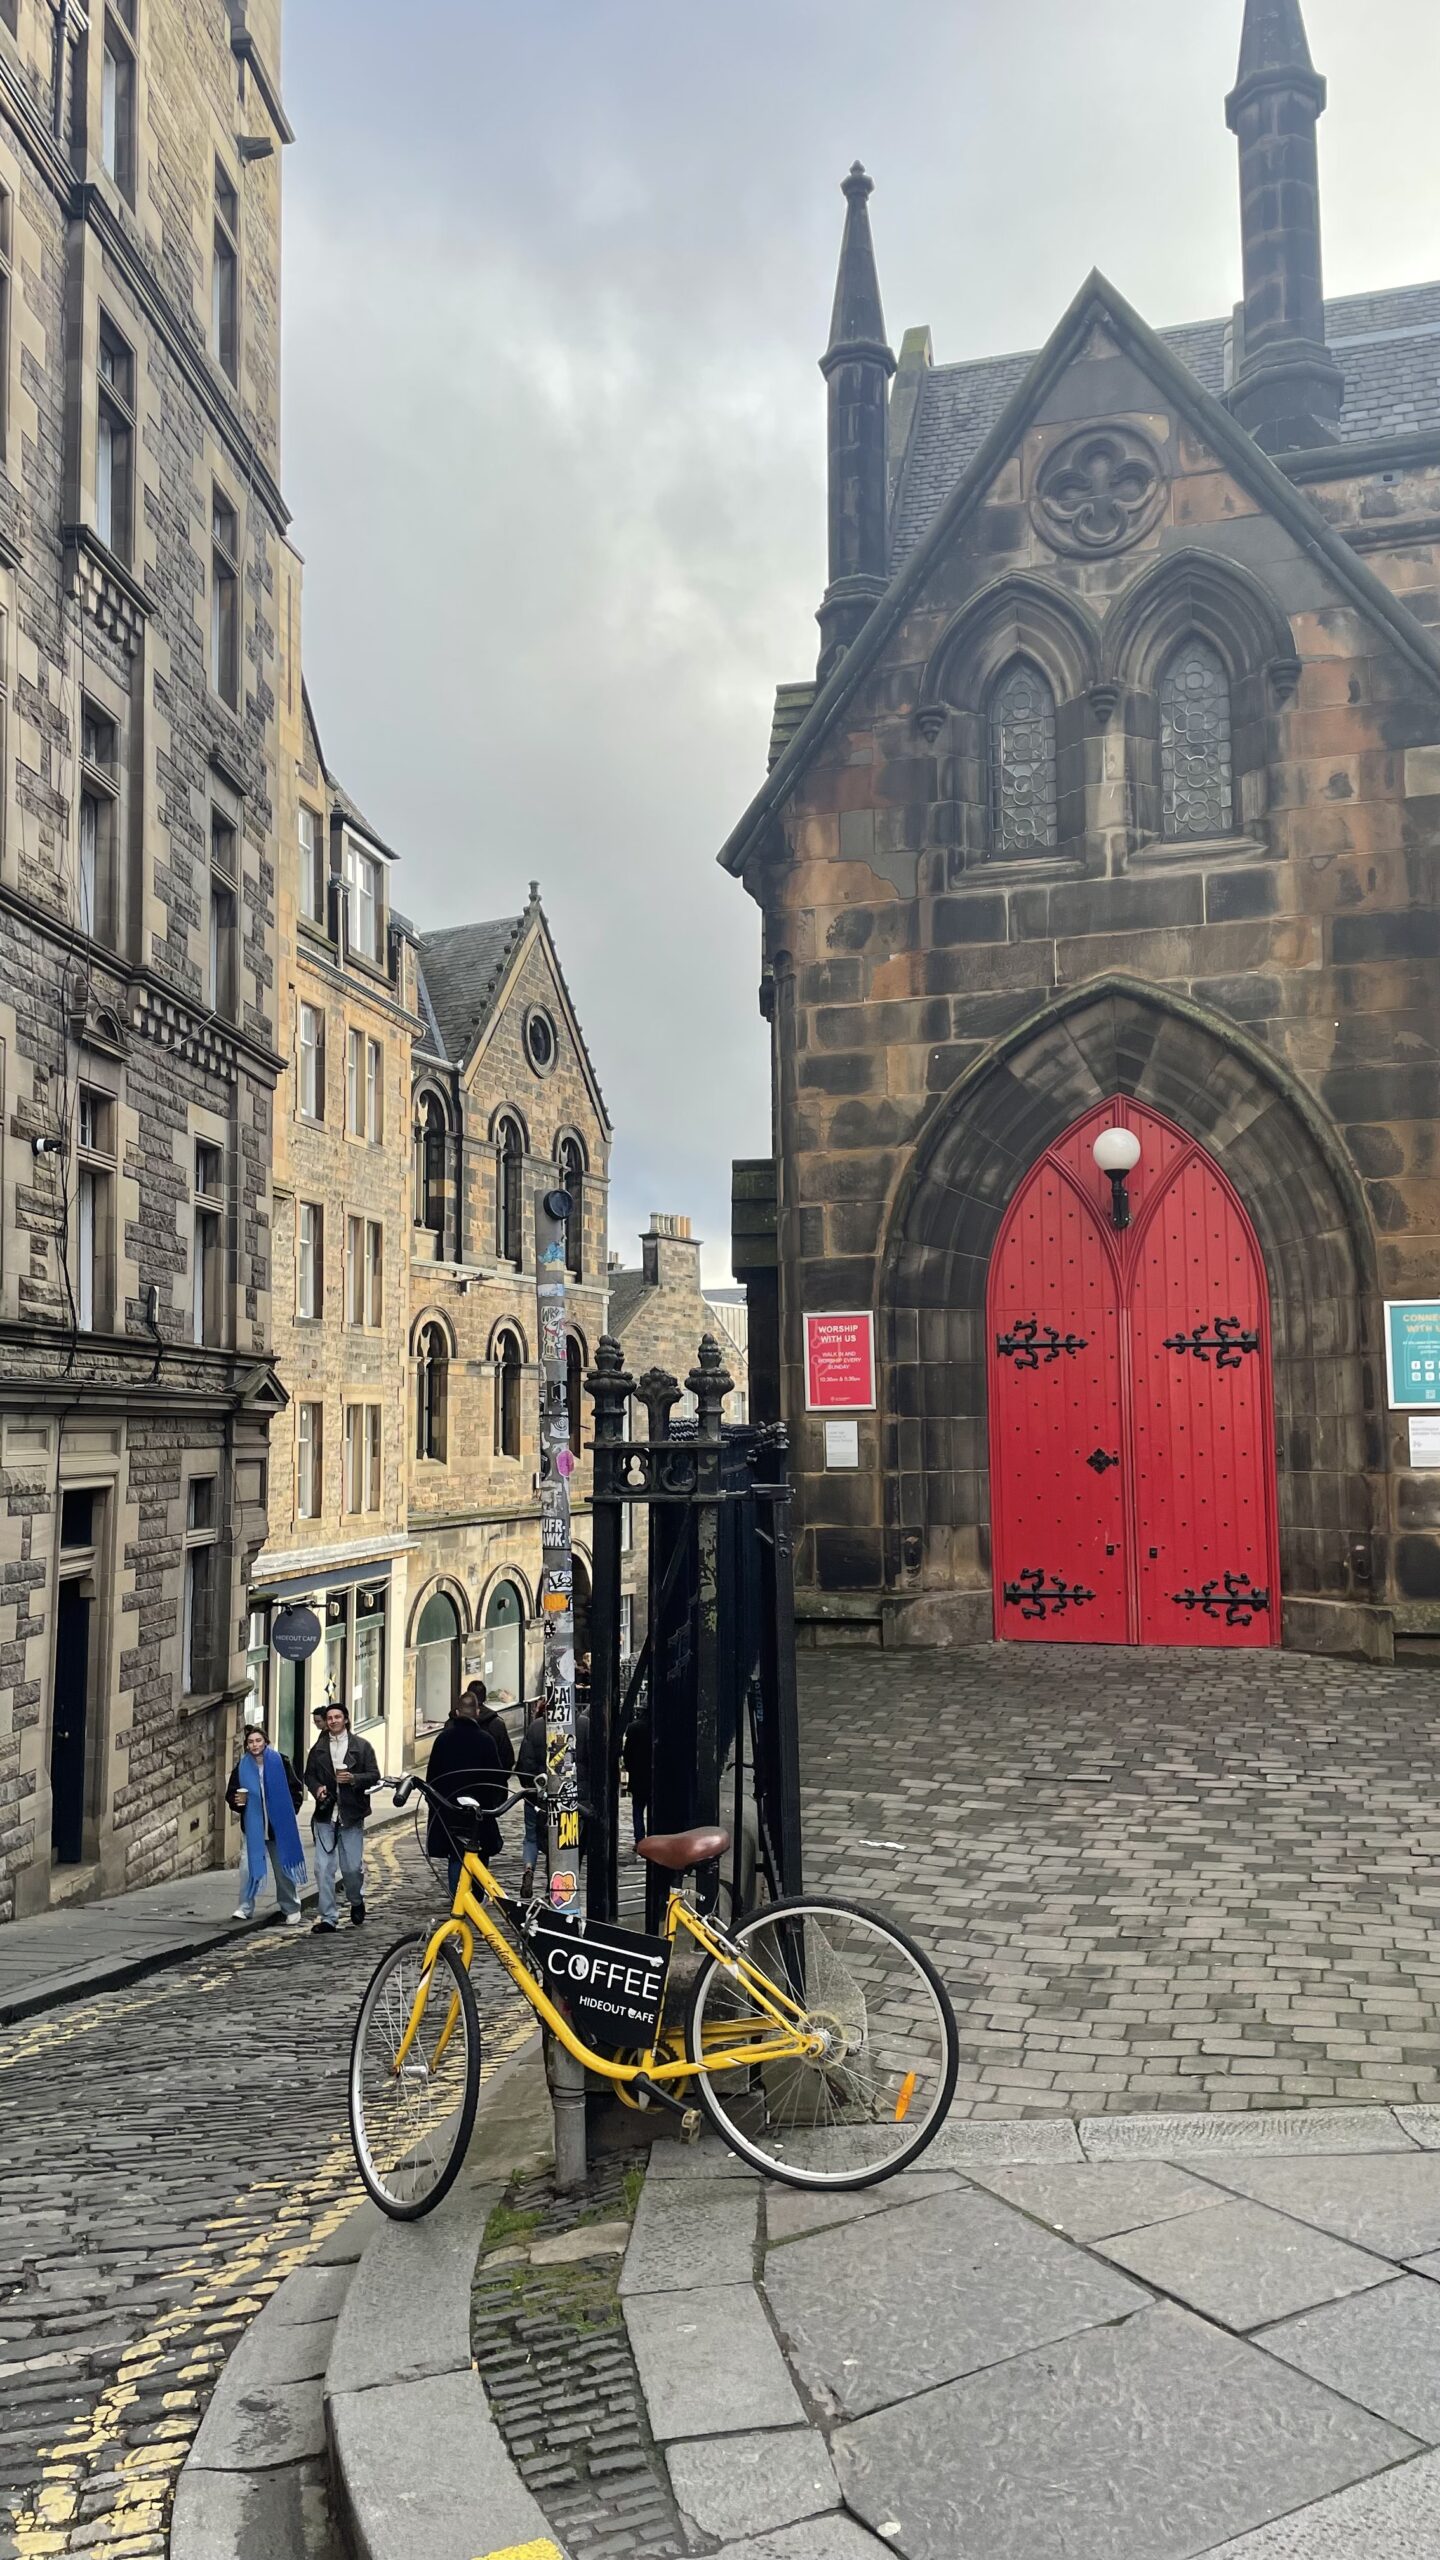 Edinburgh, The Royal mile